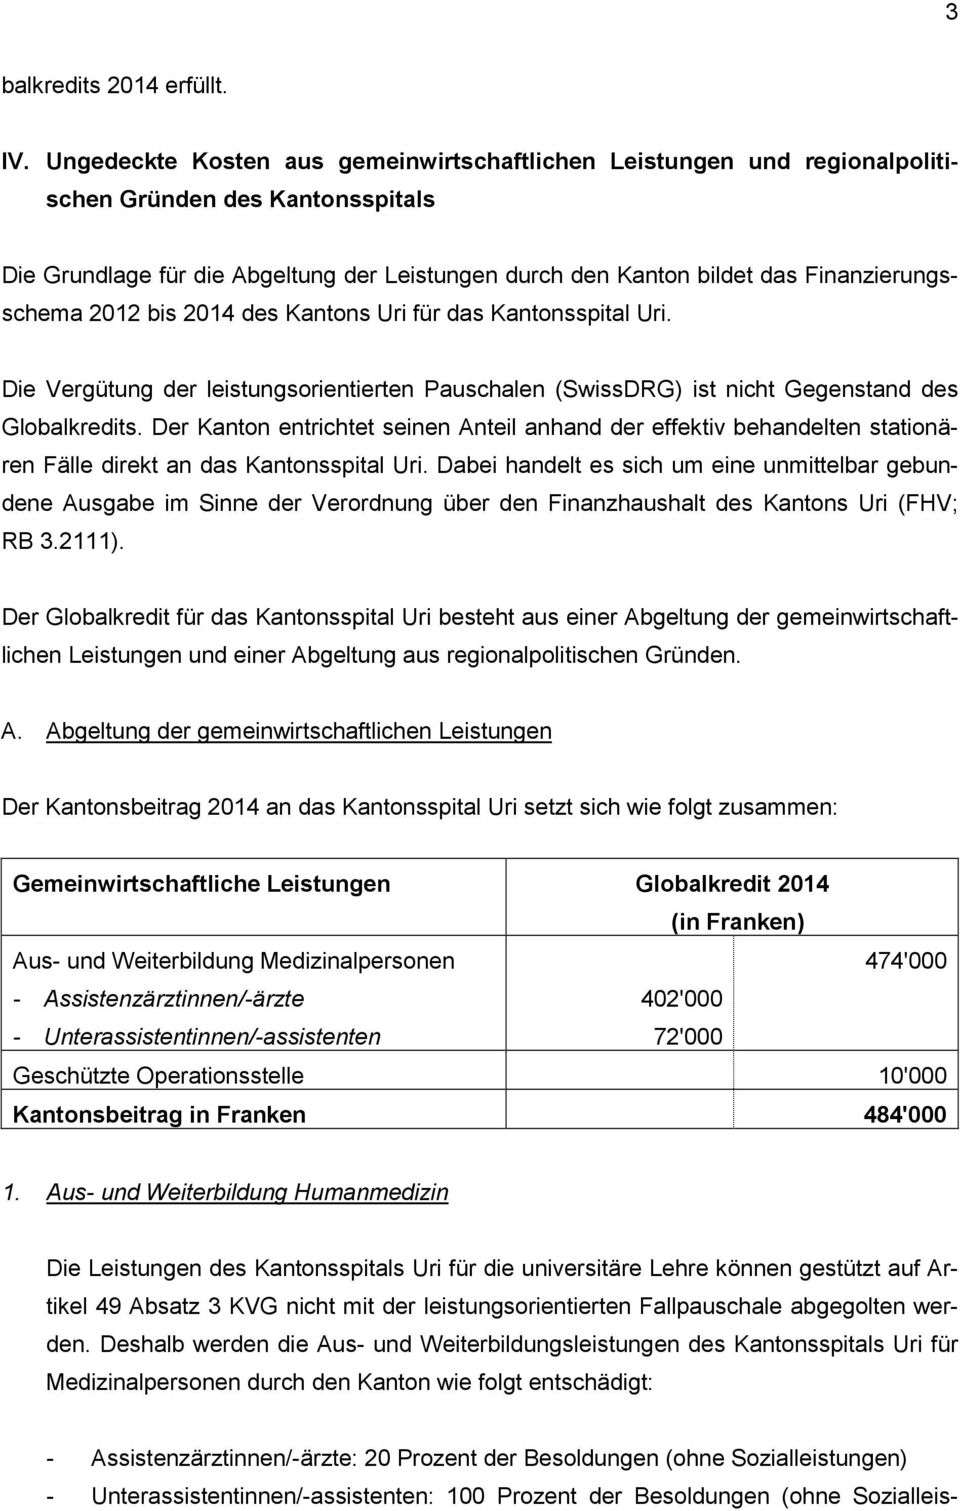 Finanzierungsschema 2012 bis 2014 des Kantons Uri für das Kantonsspital Uri. Die Vergütung der leistungsorientierten Pauschalen (SwissDRG) ist nicht Gegenstand des Globalkredits.